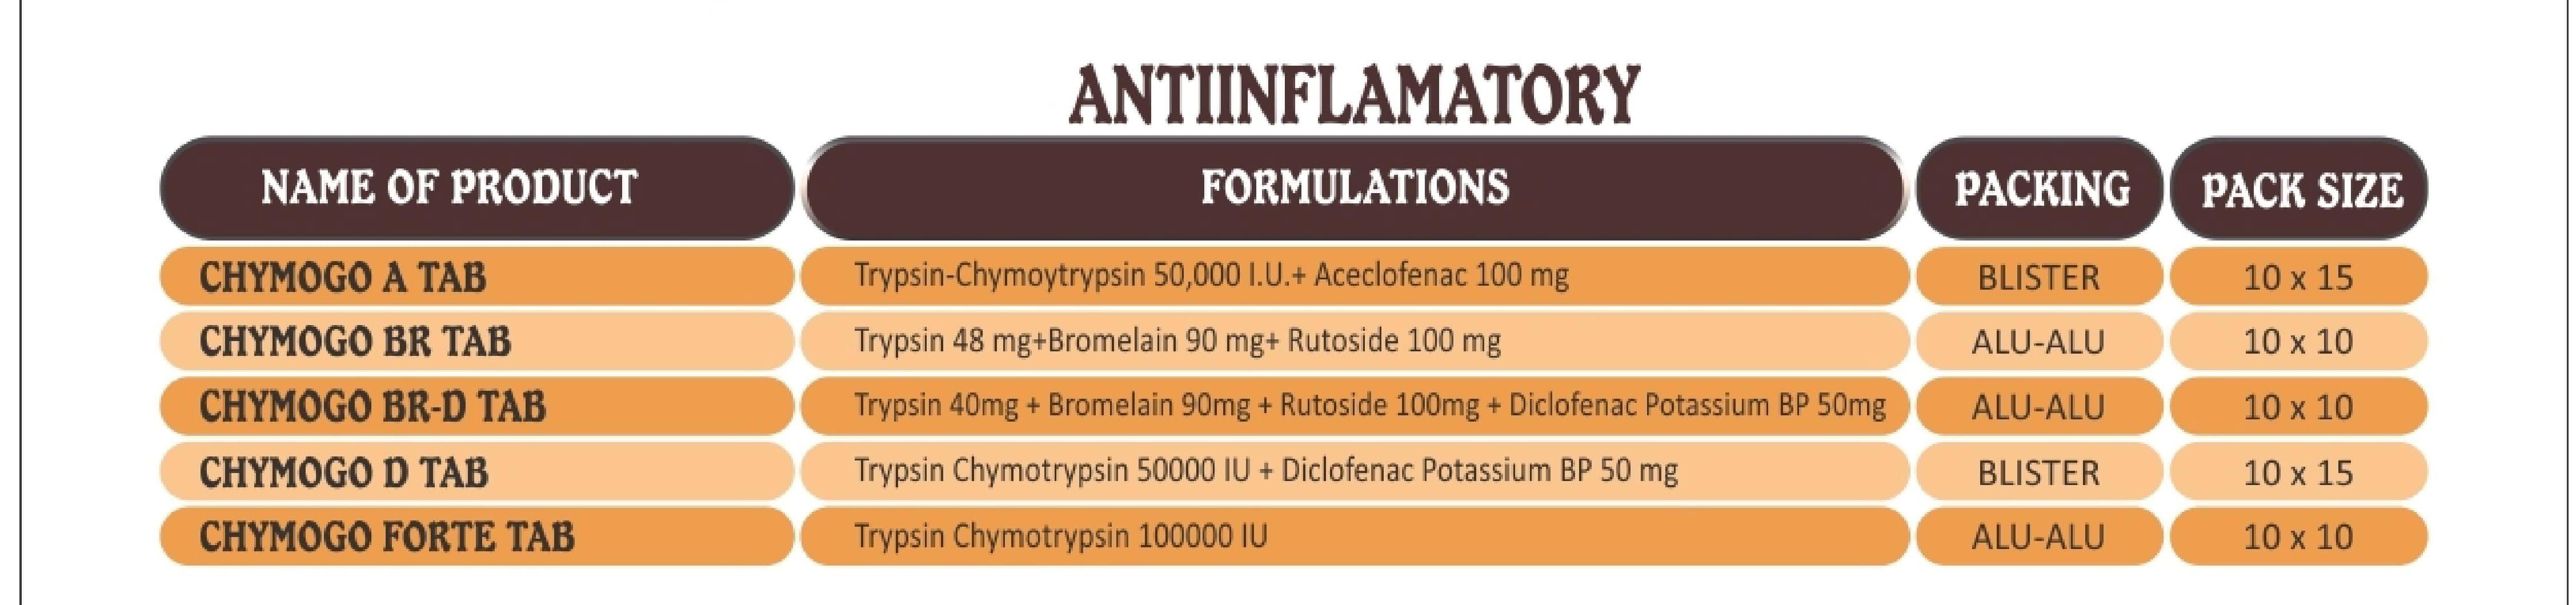 Glossary Anti-Inflammatory Products